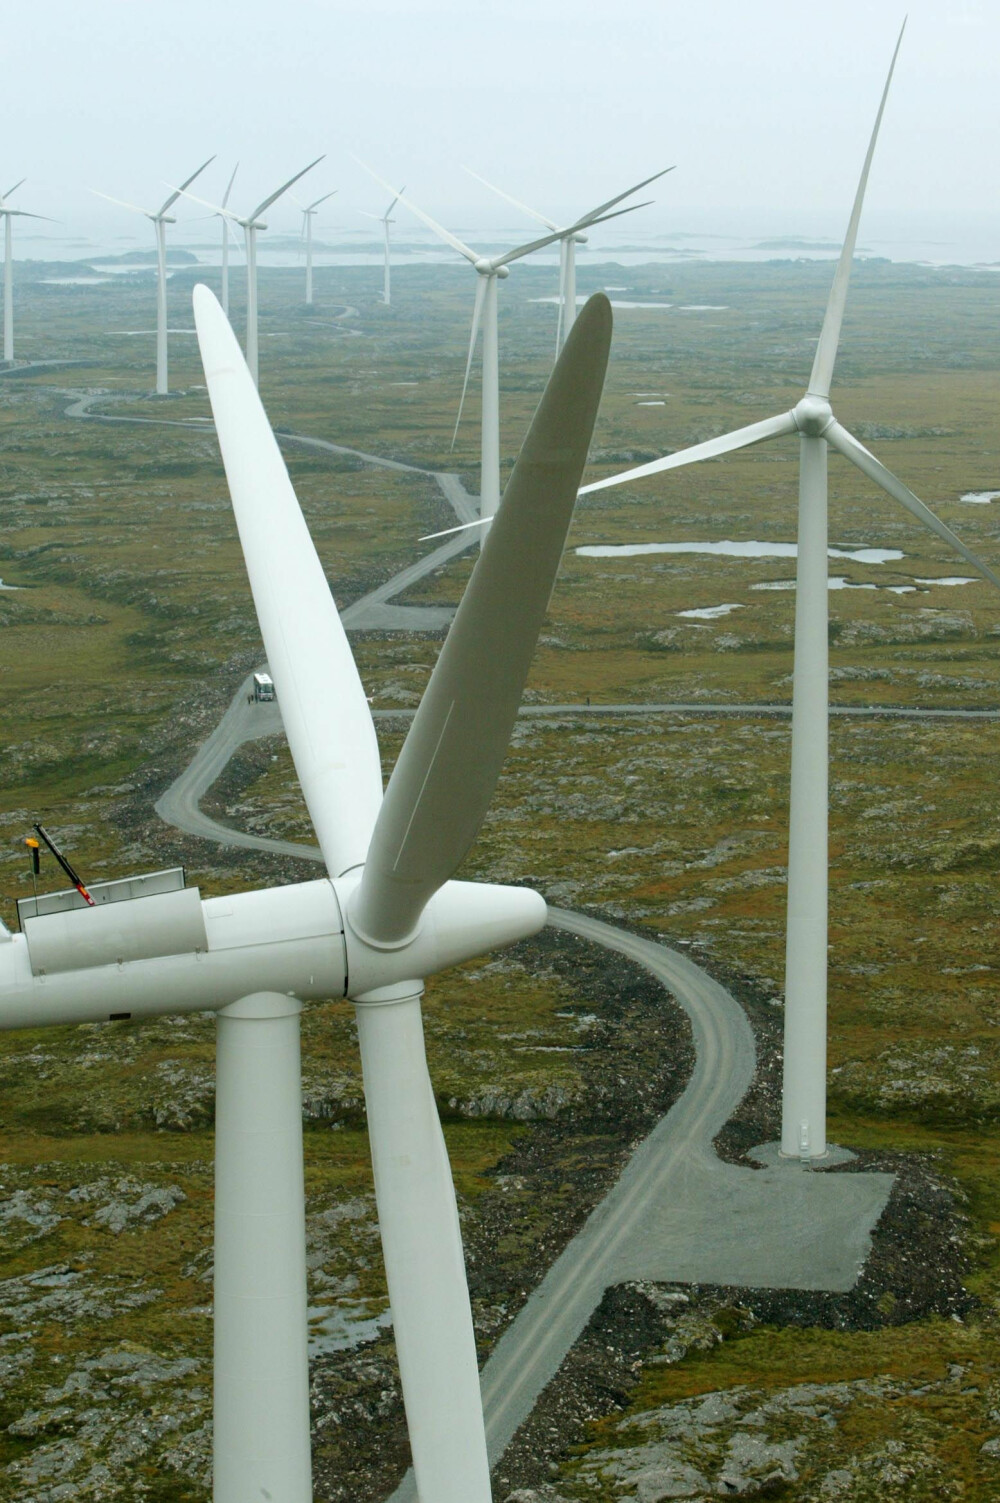 <b>GAM­MELT NYTT:</b> Vind­møl­ler er gam­melt nytt. Også i Norge. Smø­la vind­park i Smø­la kom­mu­ne i Møre og Roms­dal åp­net før­s­te ut­byg­gings­trinn i 2002. Til sam­men har an­leg­get 68 vind­tur­bi­ner som sam­let har en gjen­nom­snitt­lig års­pro­duk­sjon på 356 GWh. An­leg­get er spredt ut­over et are­al på 18 kvad­rat­ki­lo­me­ter. Da an­leg­get åp­net, var det Europas stør­ste land­ba­ser­te vind­kraft­an­legg.